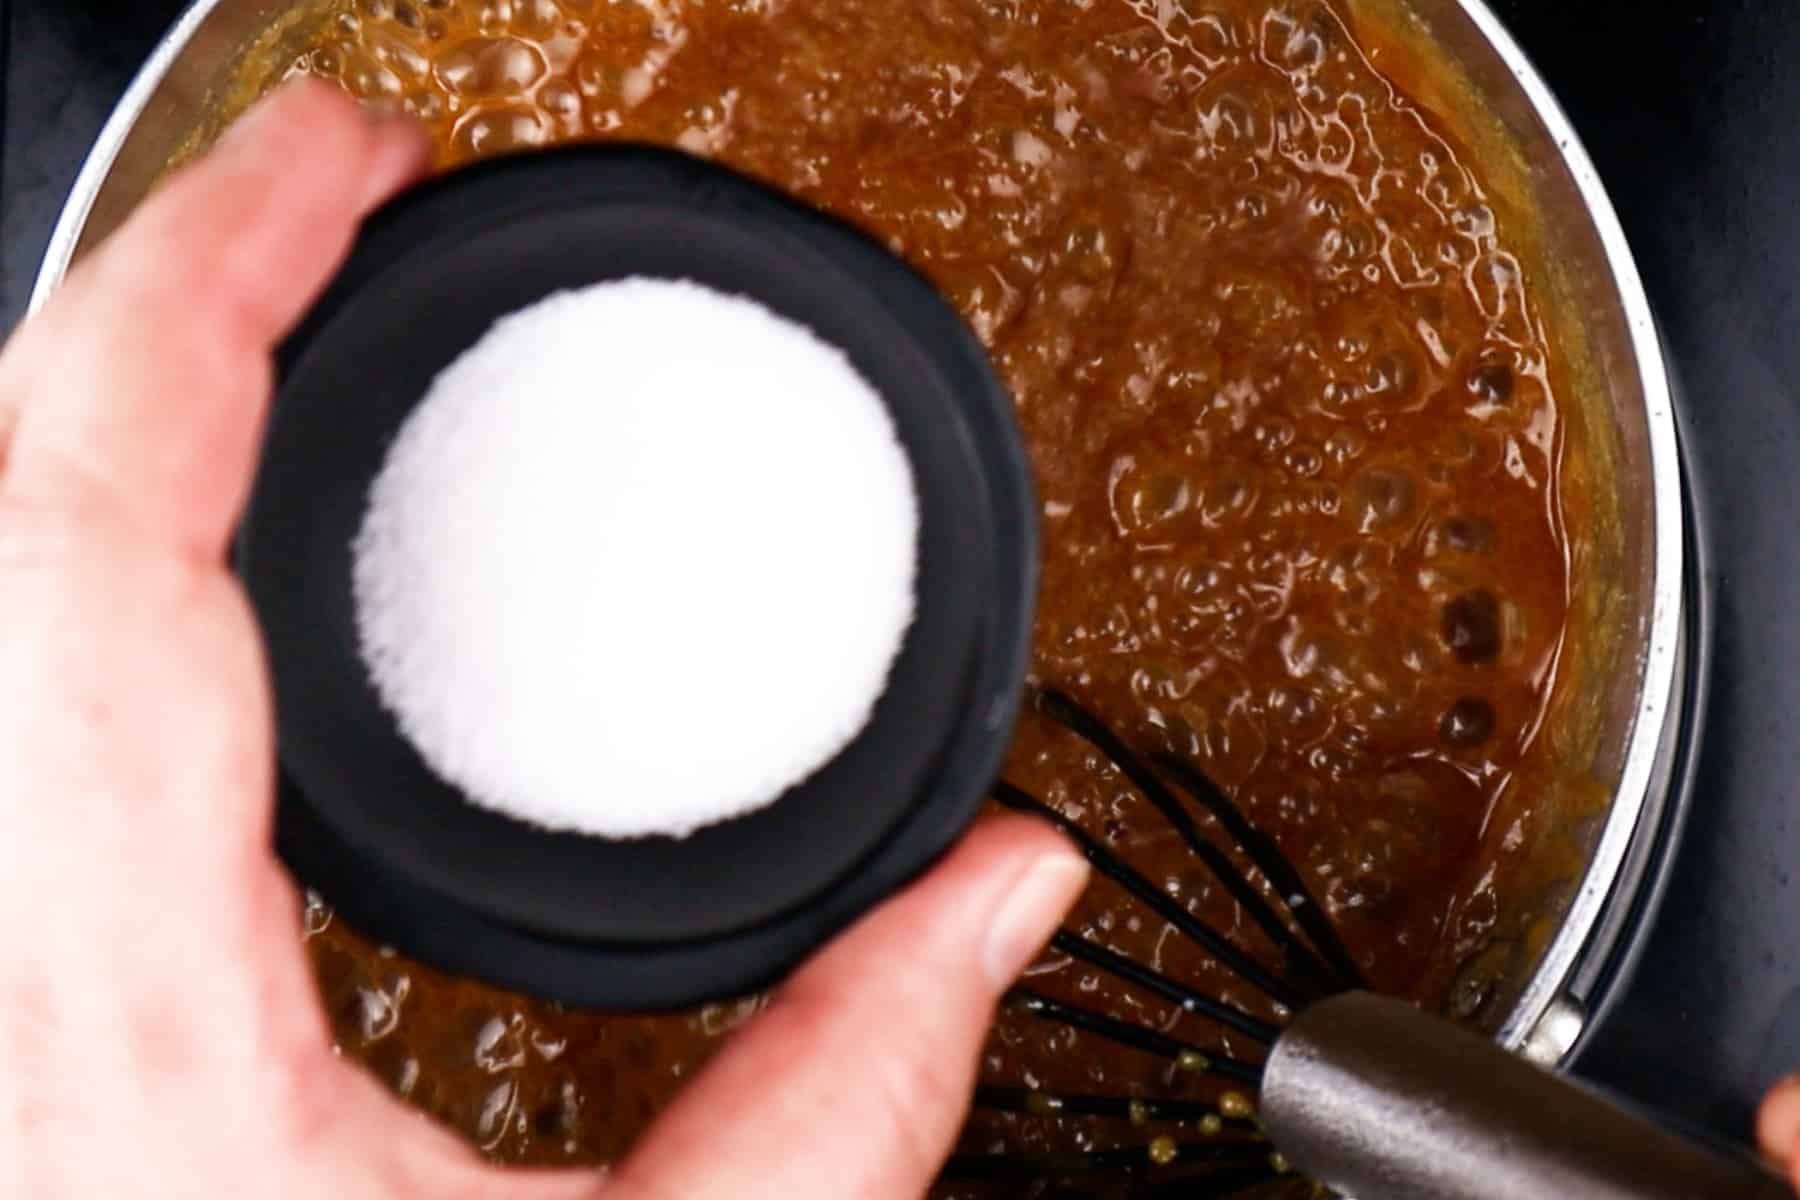 Caramel sauce cooking